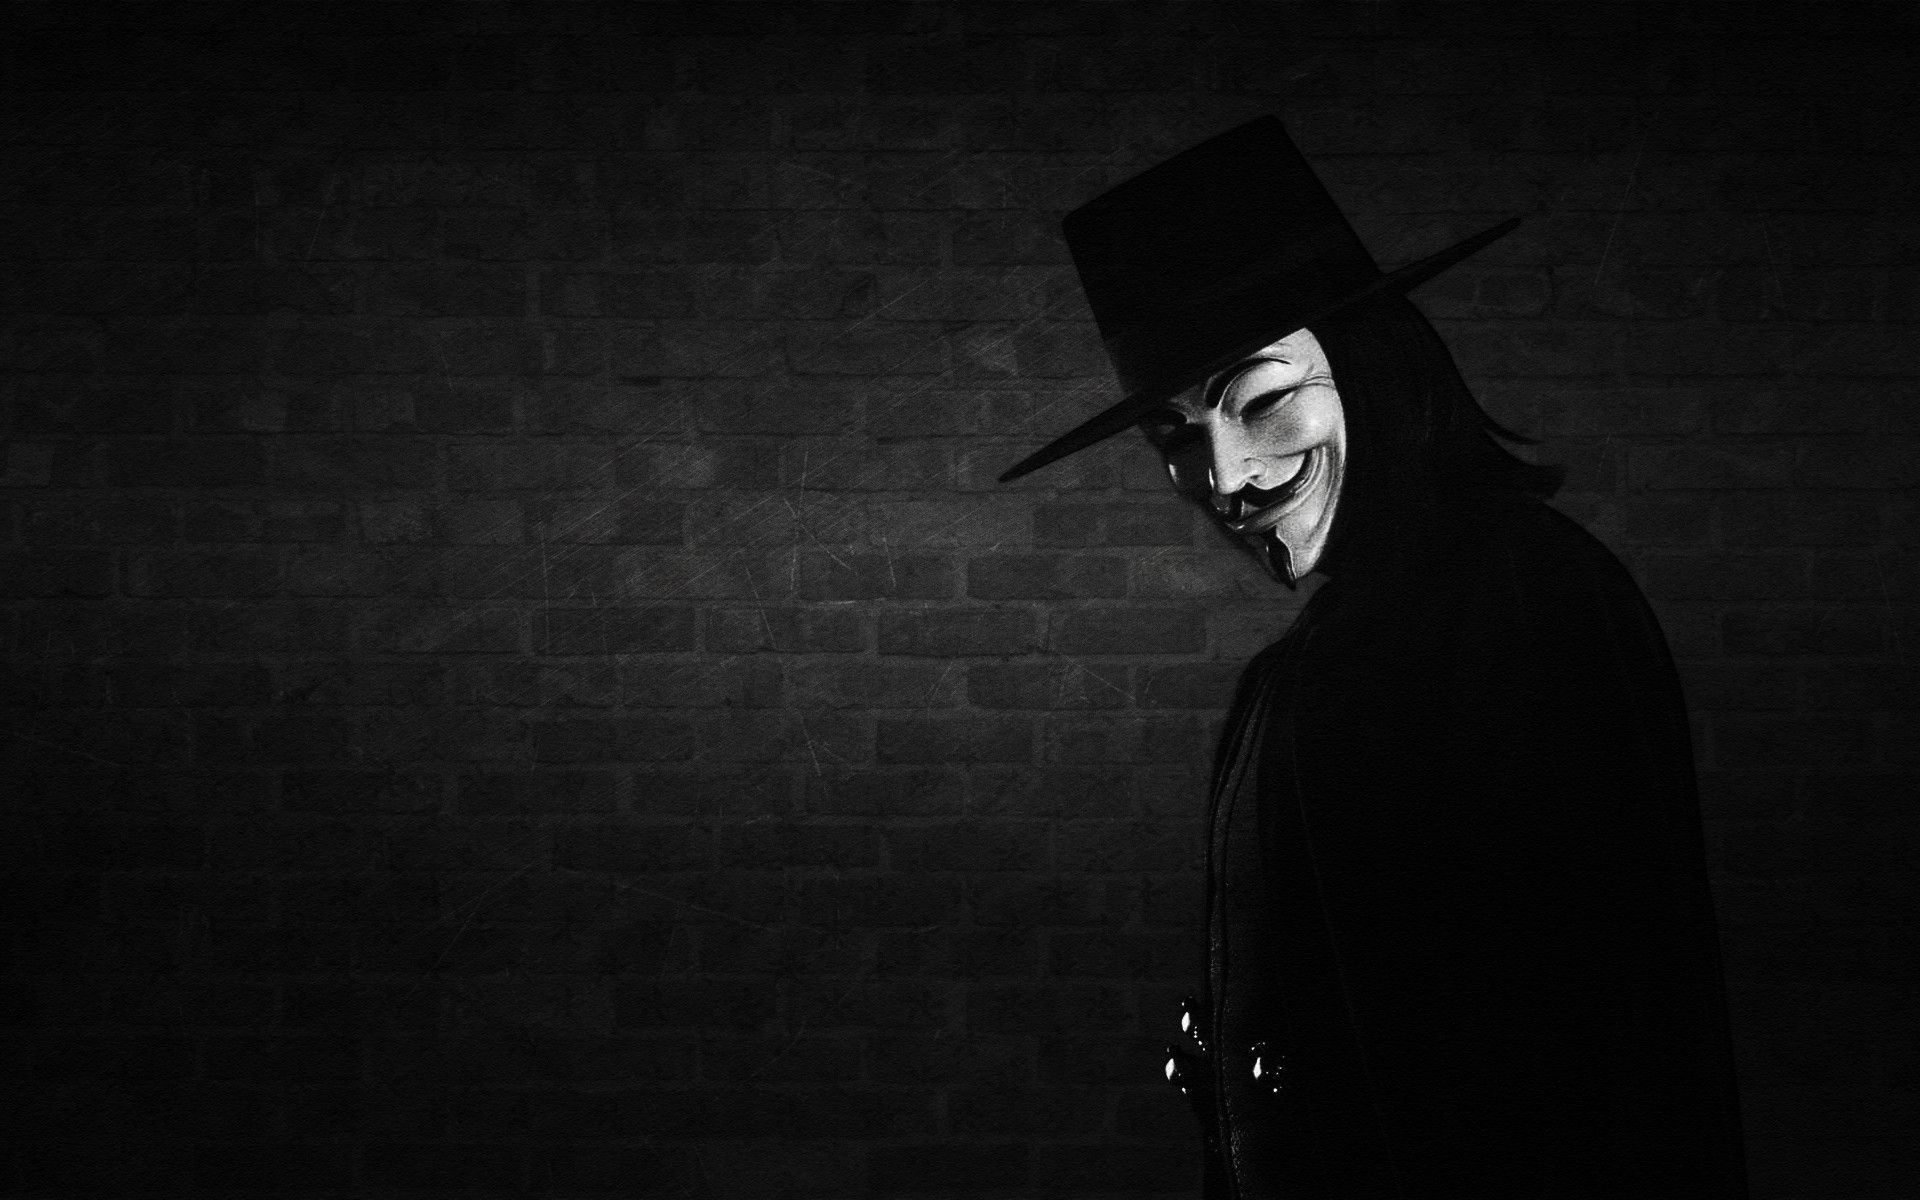 V For Vendetta Background 1920X1080